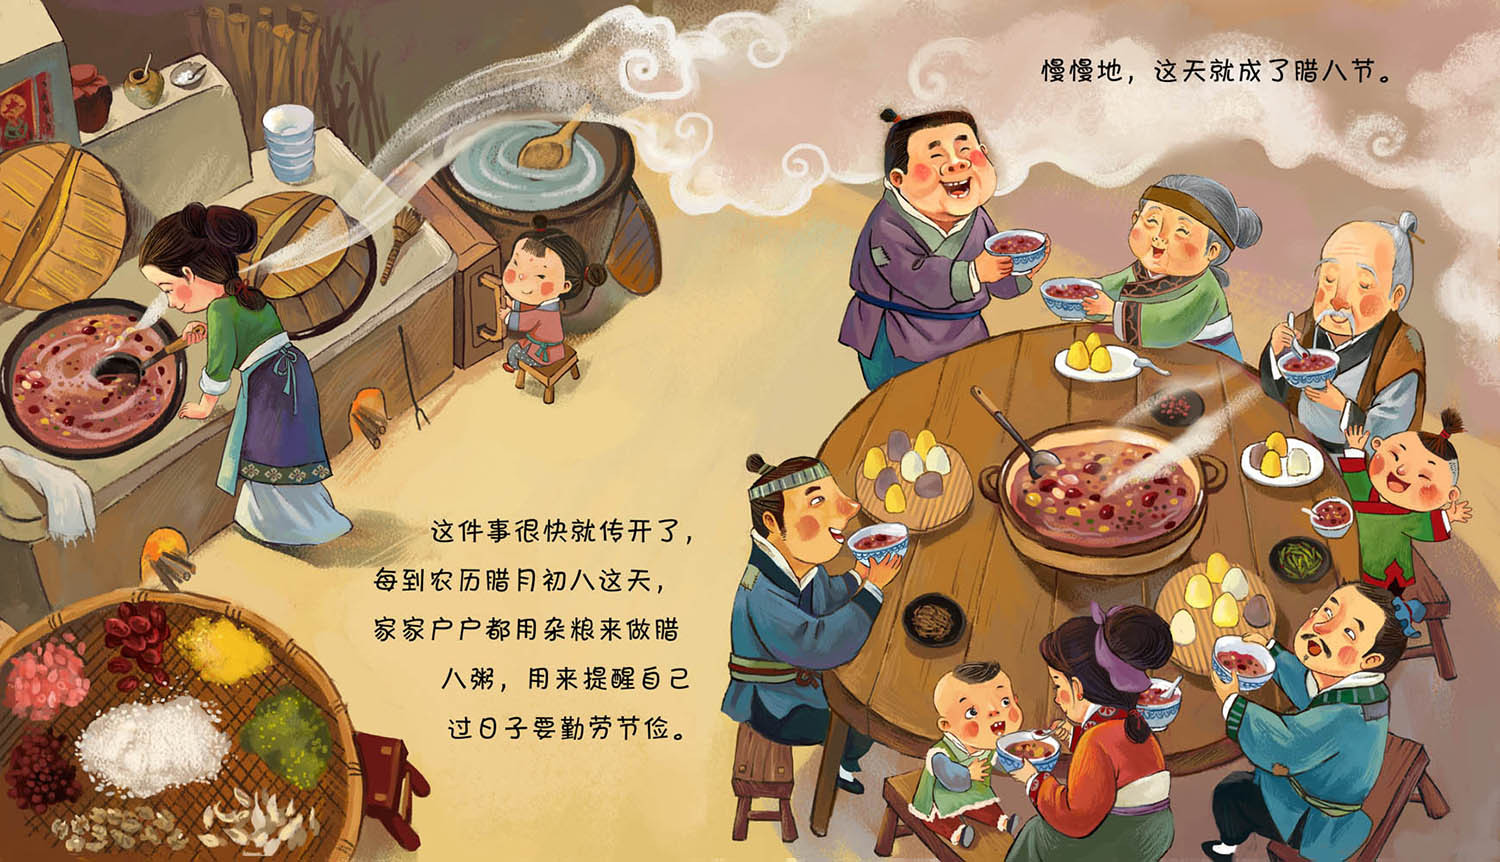 中国传统节日绘本《腊八粥》局部